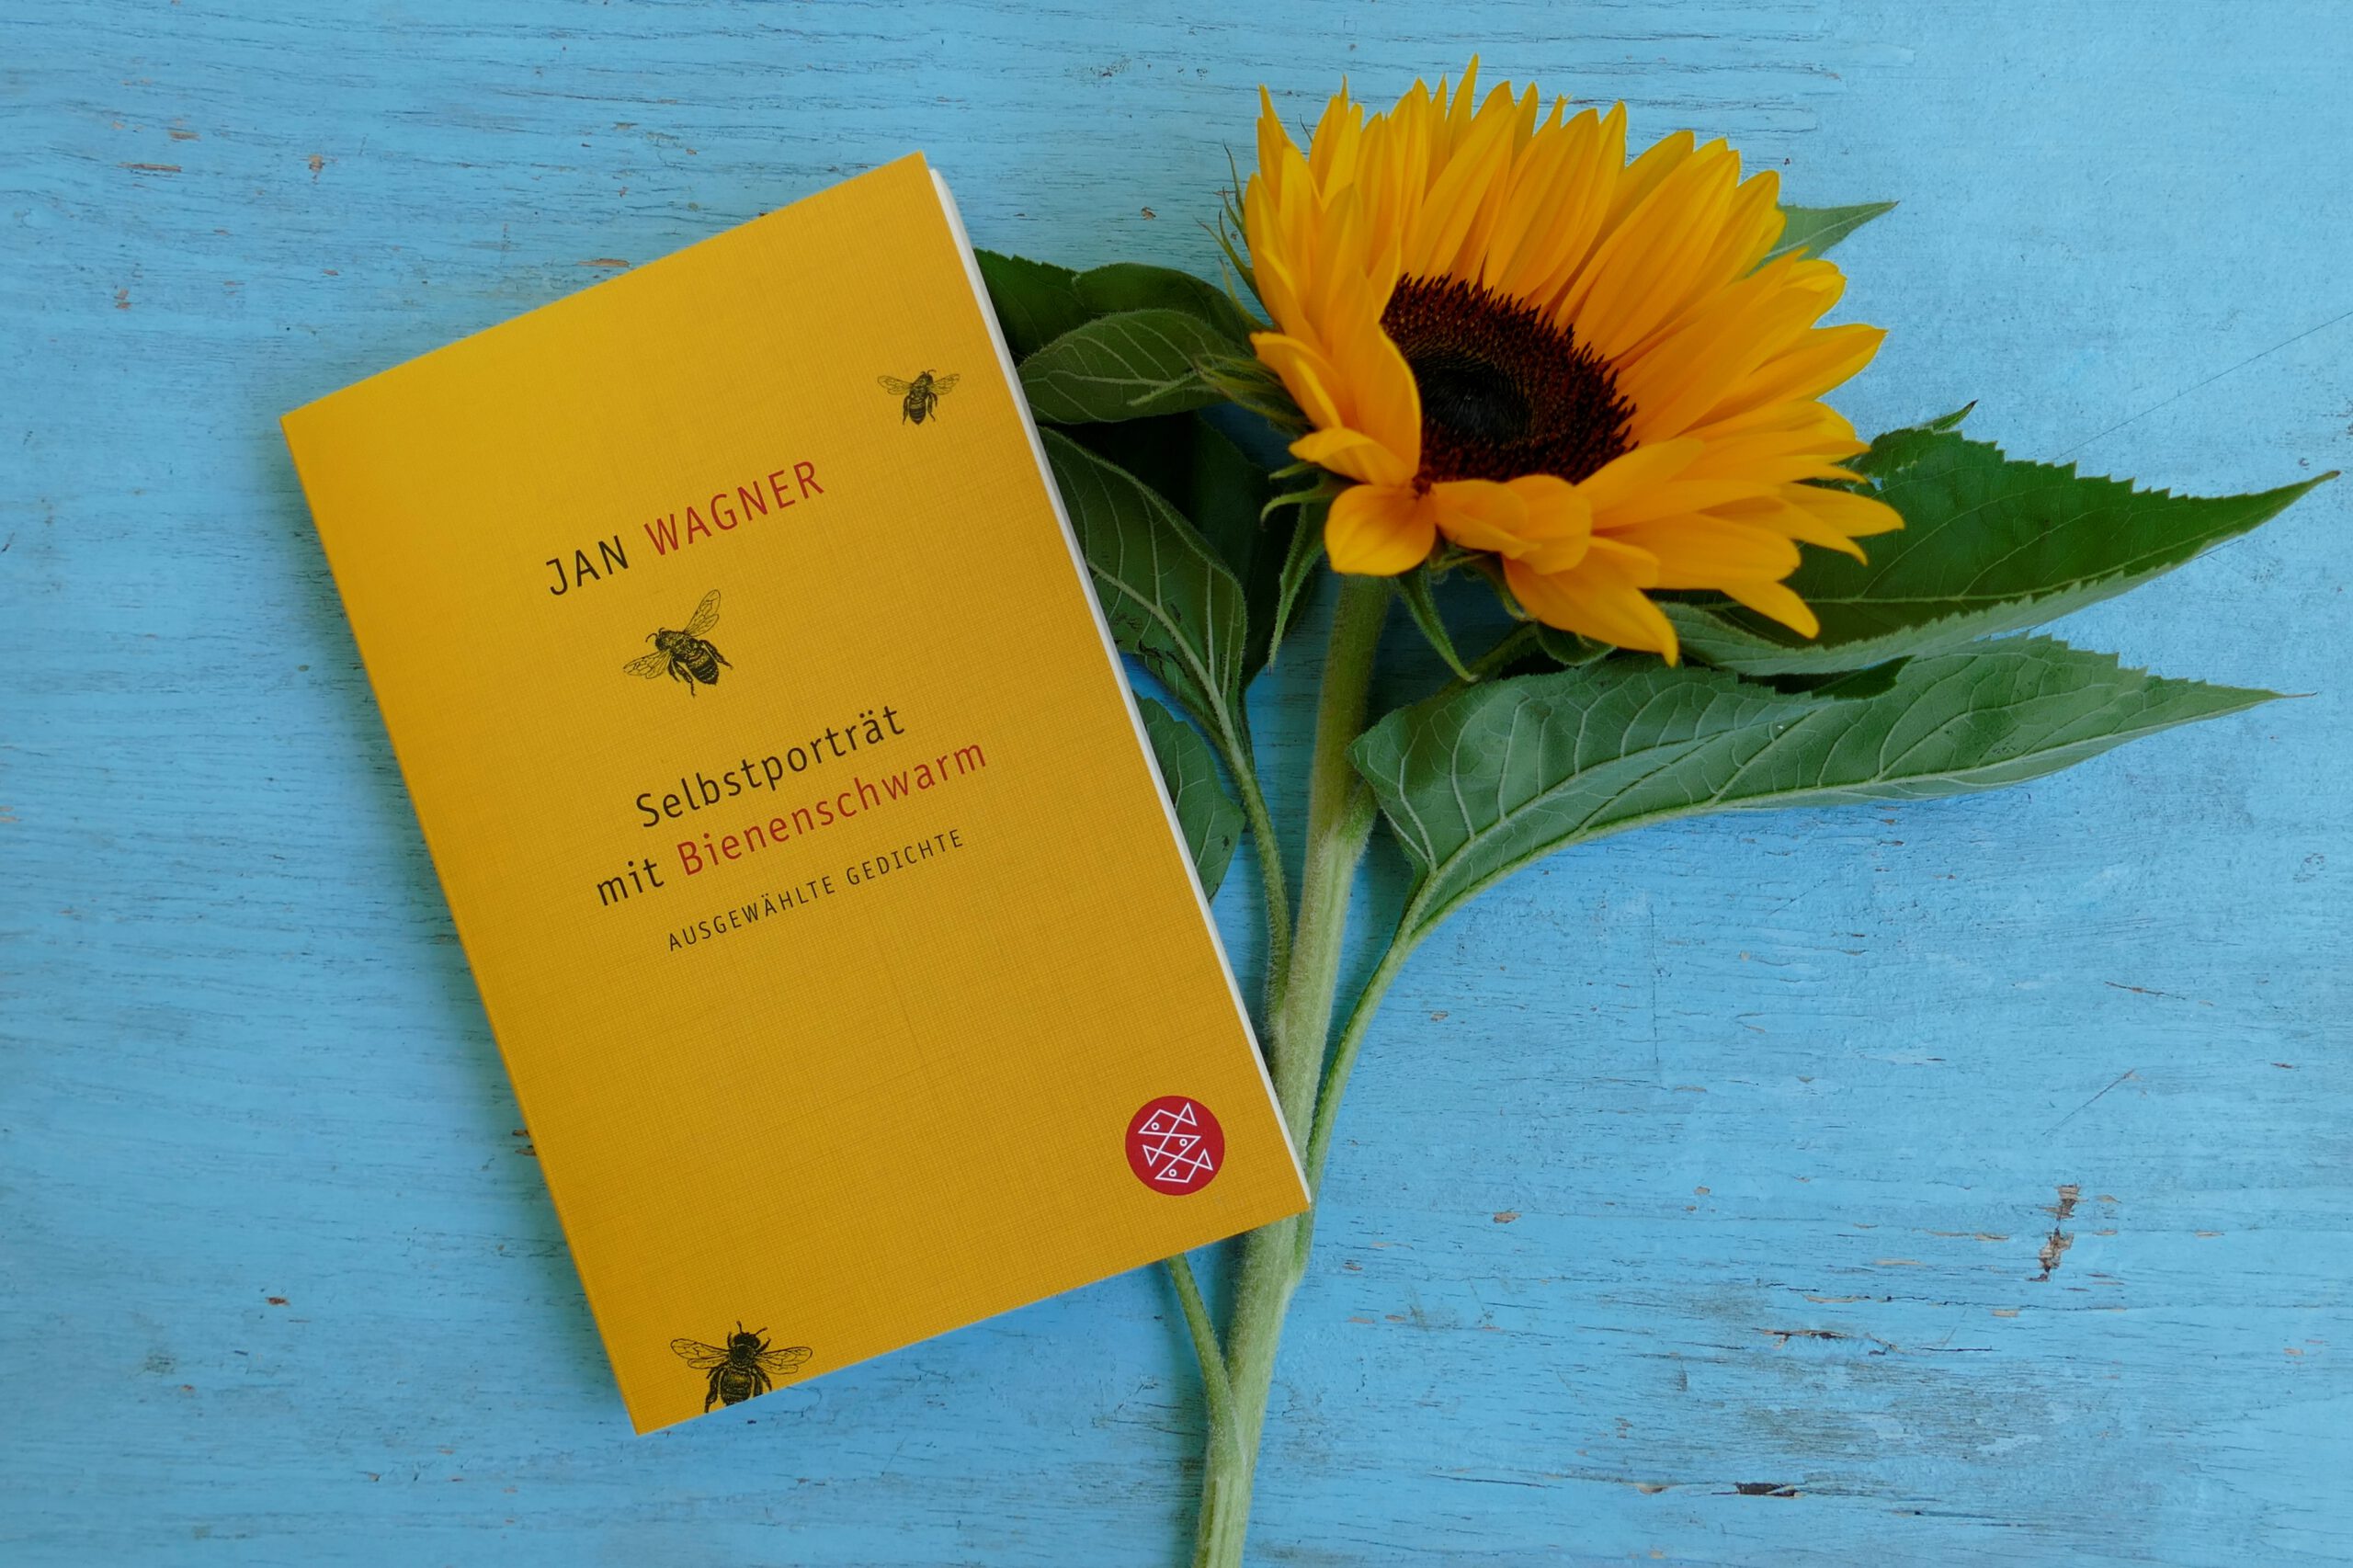 Gedichtband "Selbstporträt mit Bienenschwarm" liegt auf einem Tisch neben einer Sonnenblume